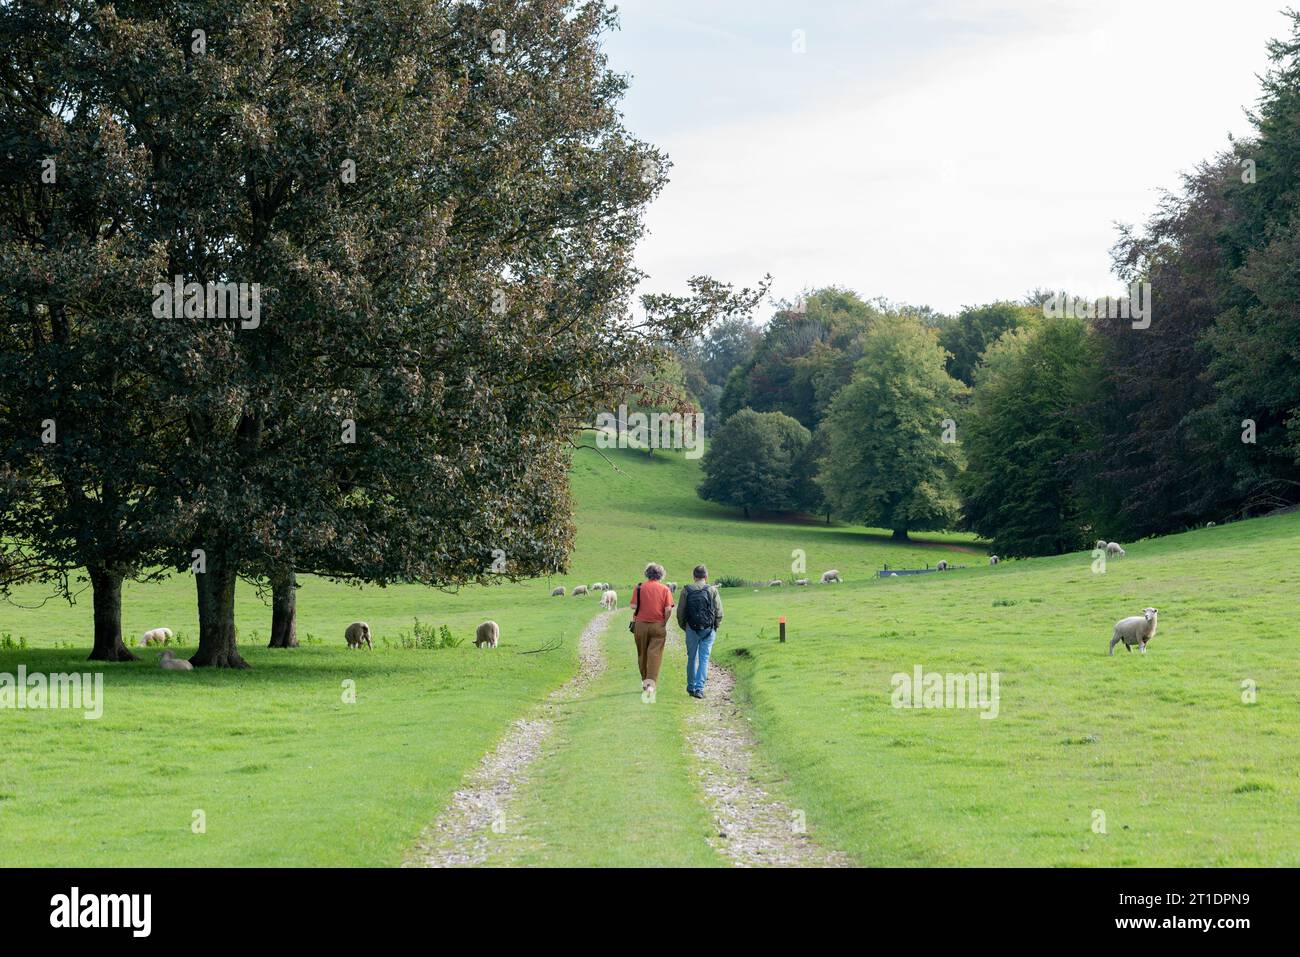 Un paio di persone che camminano lungo un sentiero nella campagna inglese passando davanti ad alberi e pecore. Foto Stock